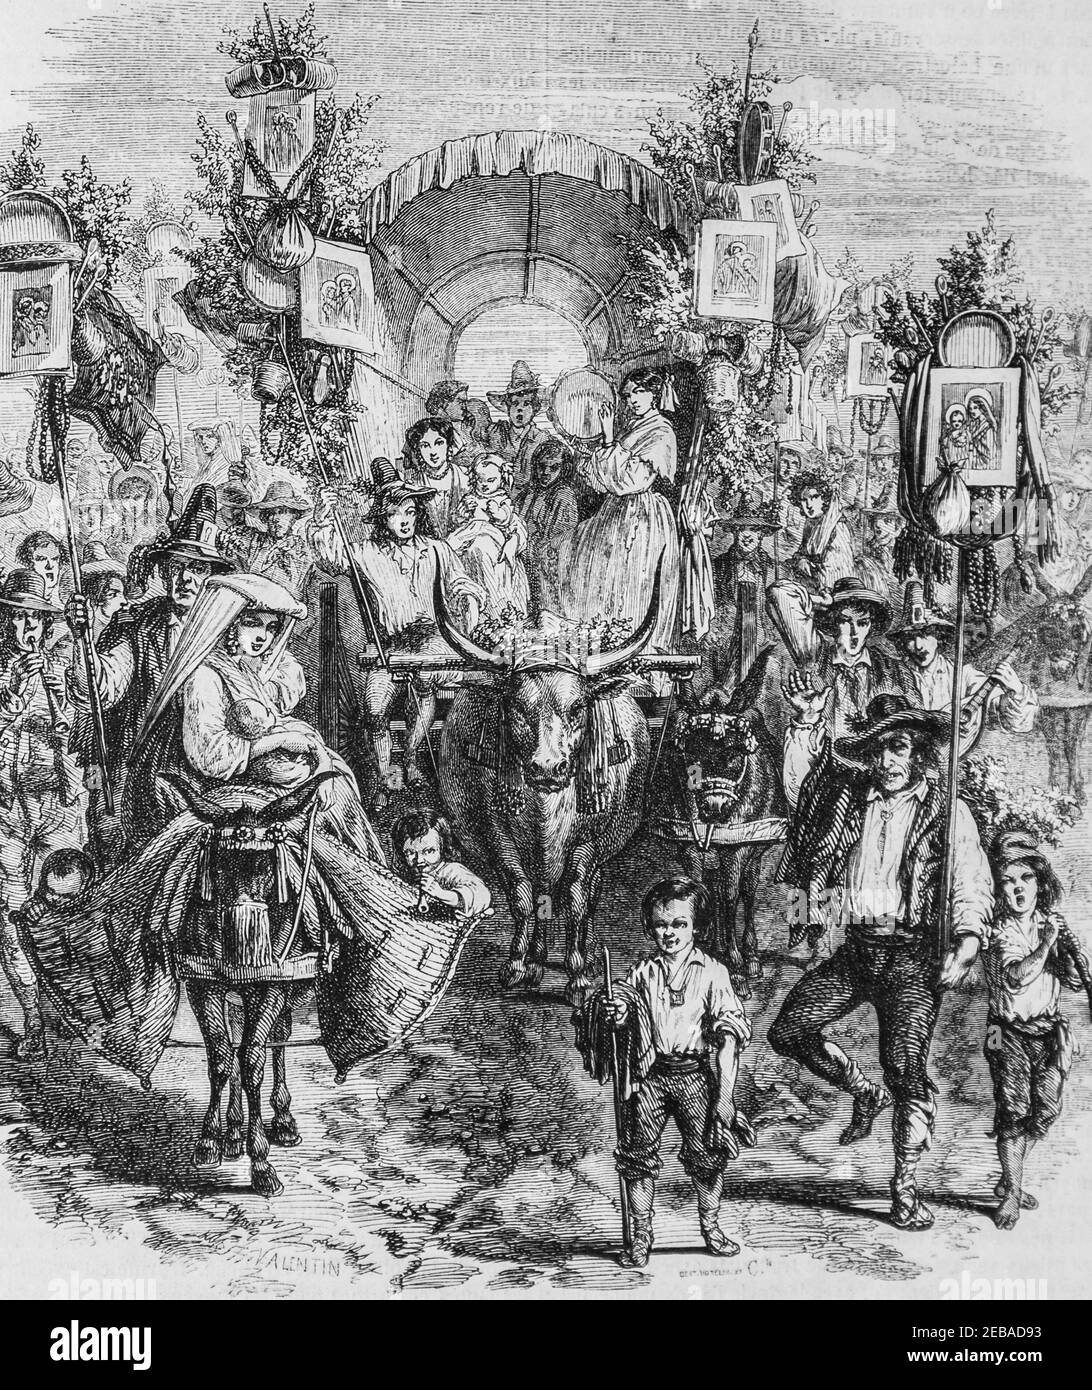 la Route de naples au retour de la fete de la madone de l'Arc , le Magazine pittoresque par edouard charton 1855 Stockfoto